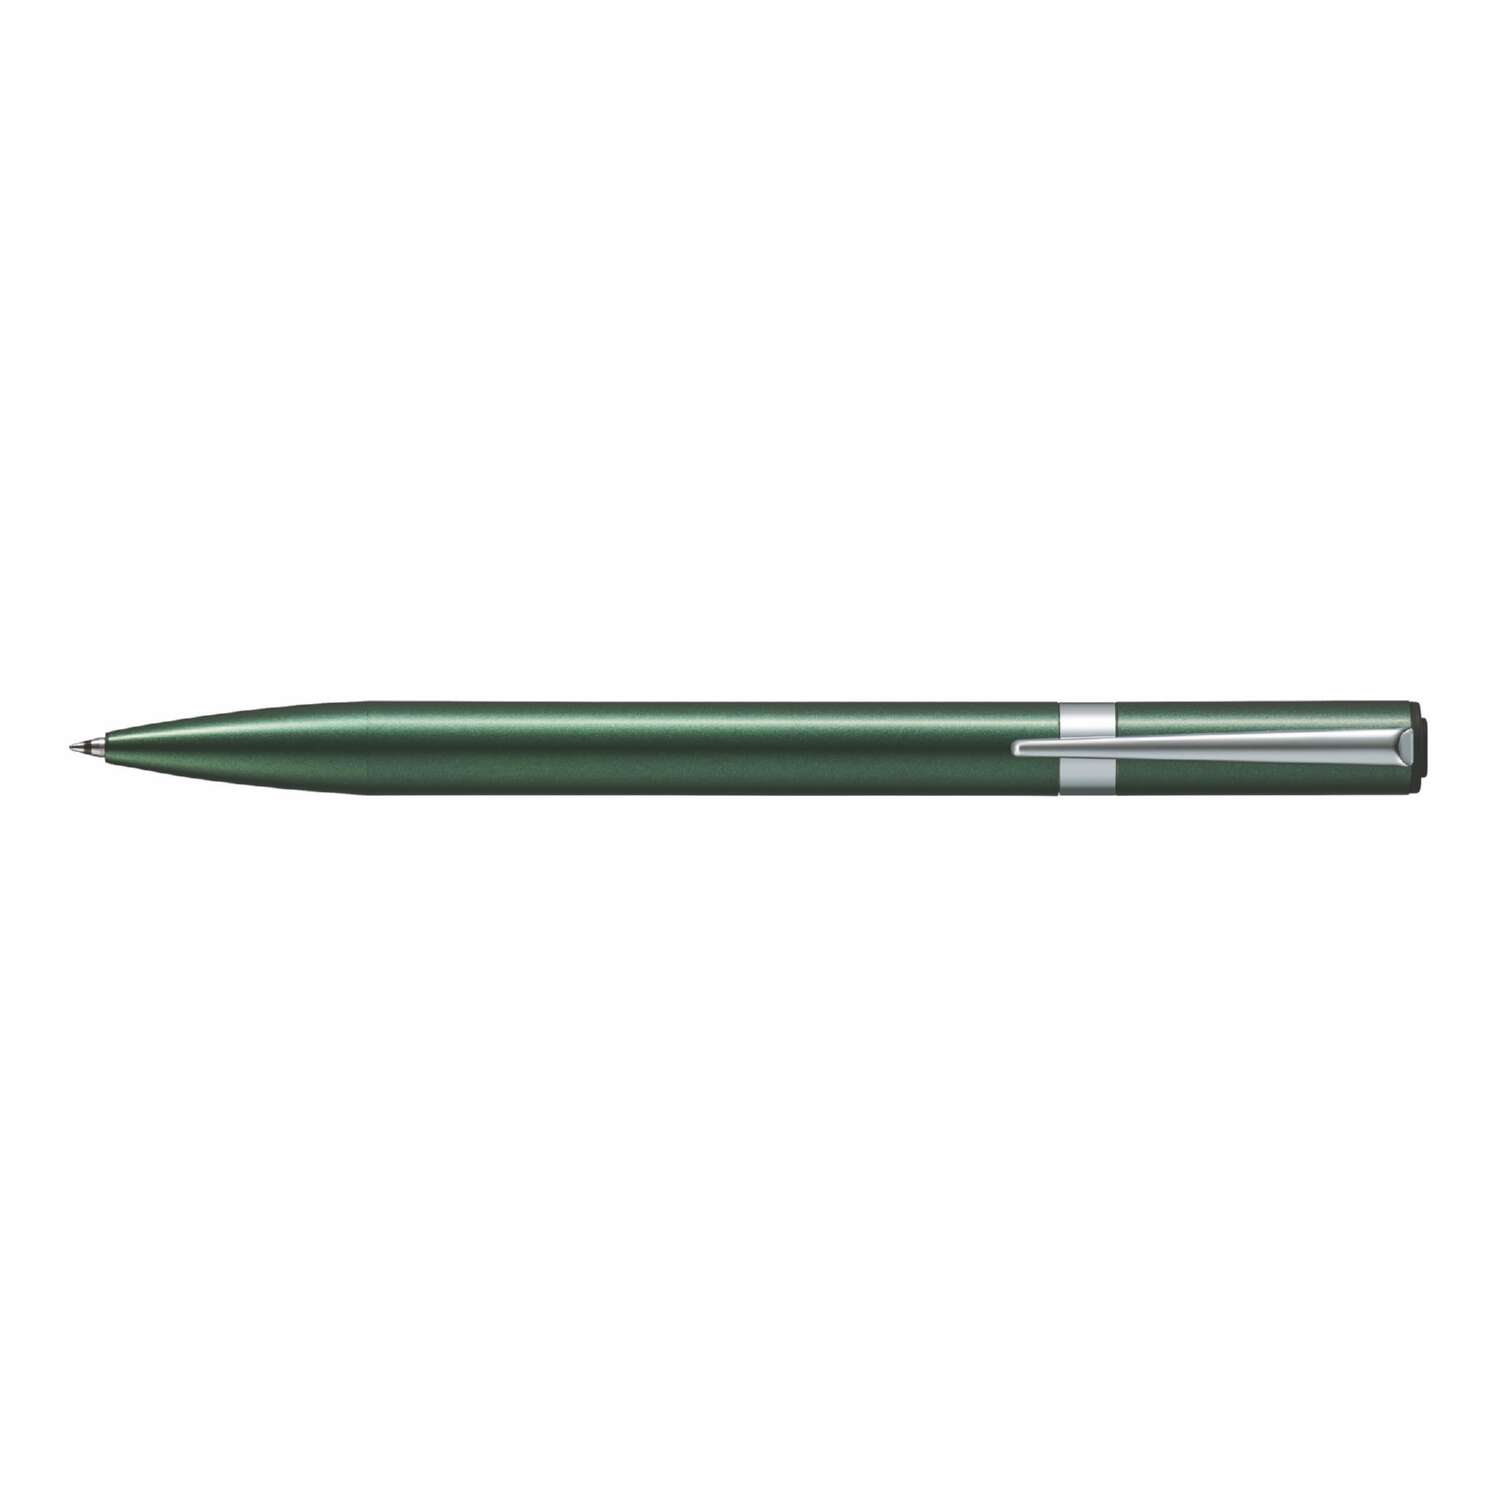 Ручка шариковая Tombow ZOOM L105 City черная корпус зеленый линия 0.7 мм подарочная упаковка - фото 3